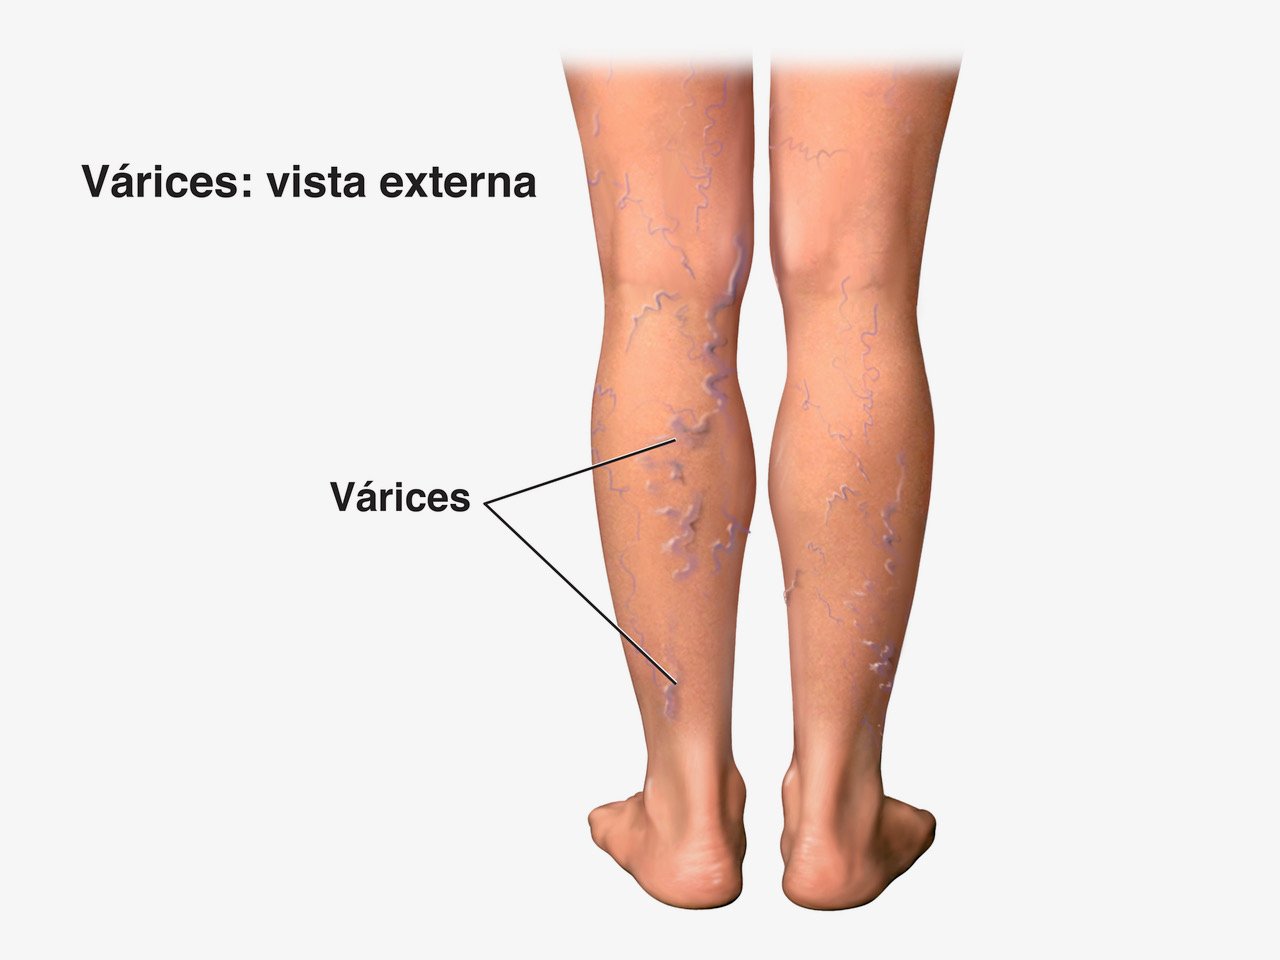 piernas sin venas varicosas piel saludable